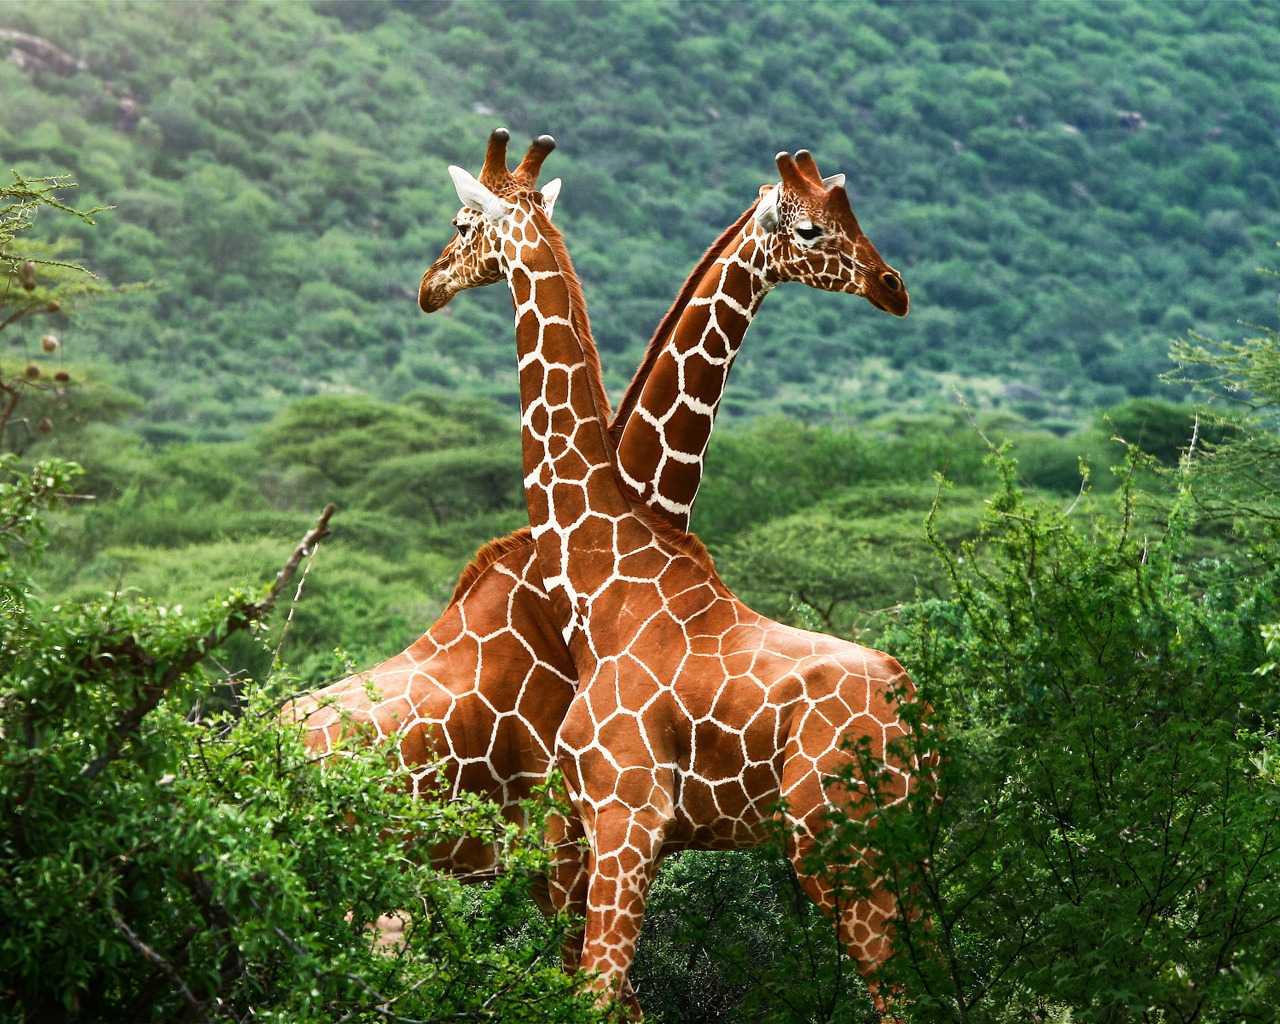 Giraffe Friends for 1280 x 1024 resolution